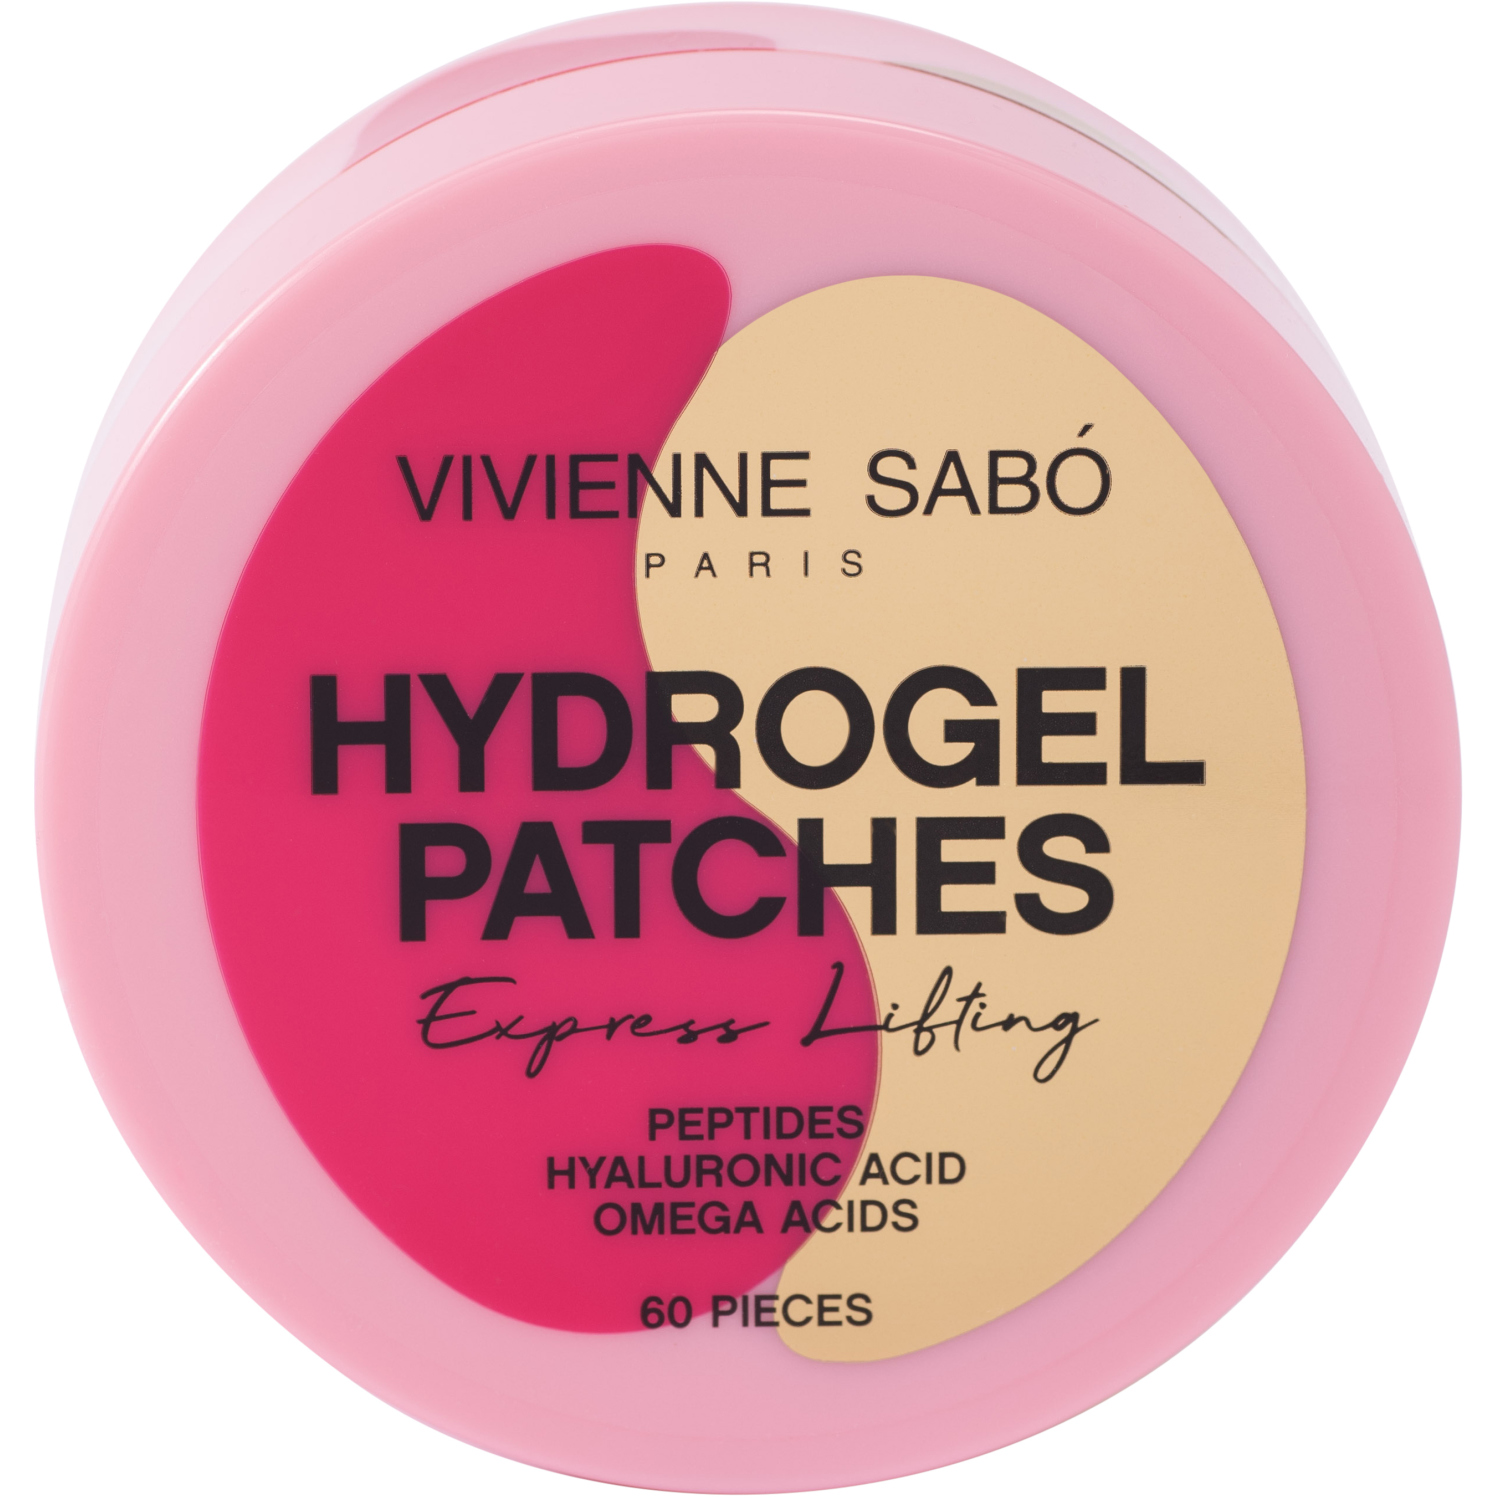 Гидрогелевые патчи для глаз Vivienne Sabo HYDROGEL PATCHES, снимают отечность и избавляют от темных кругов под глазами, прозрачные, розовые, 60 штук